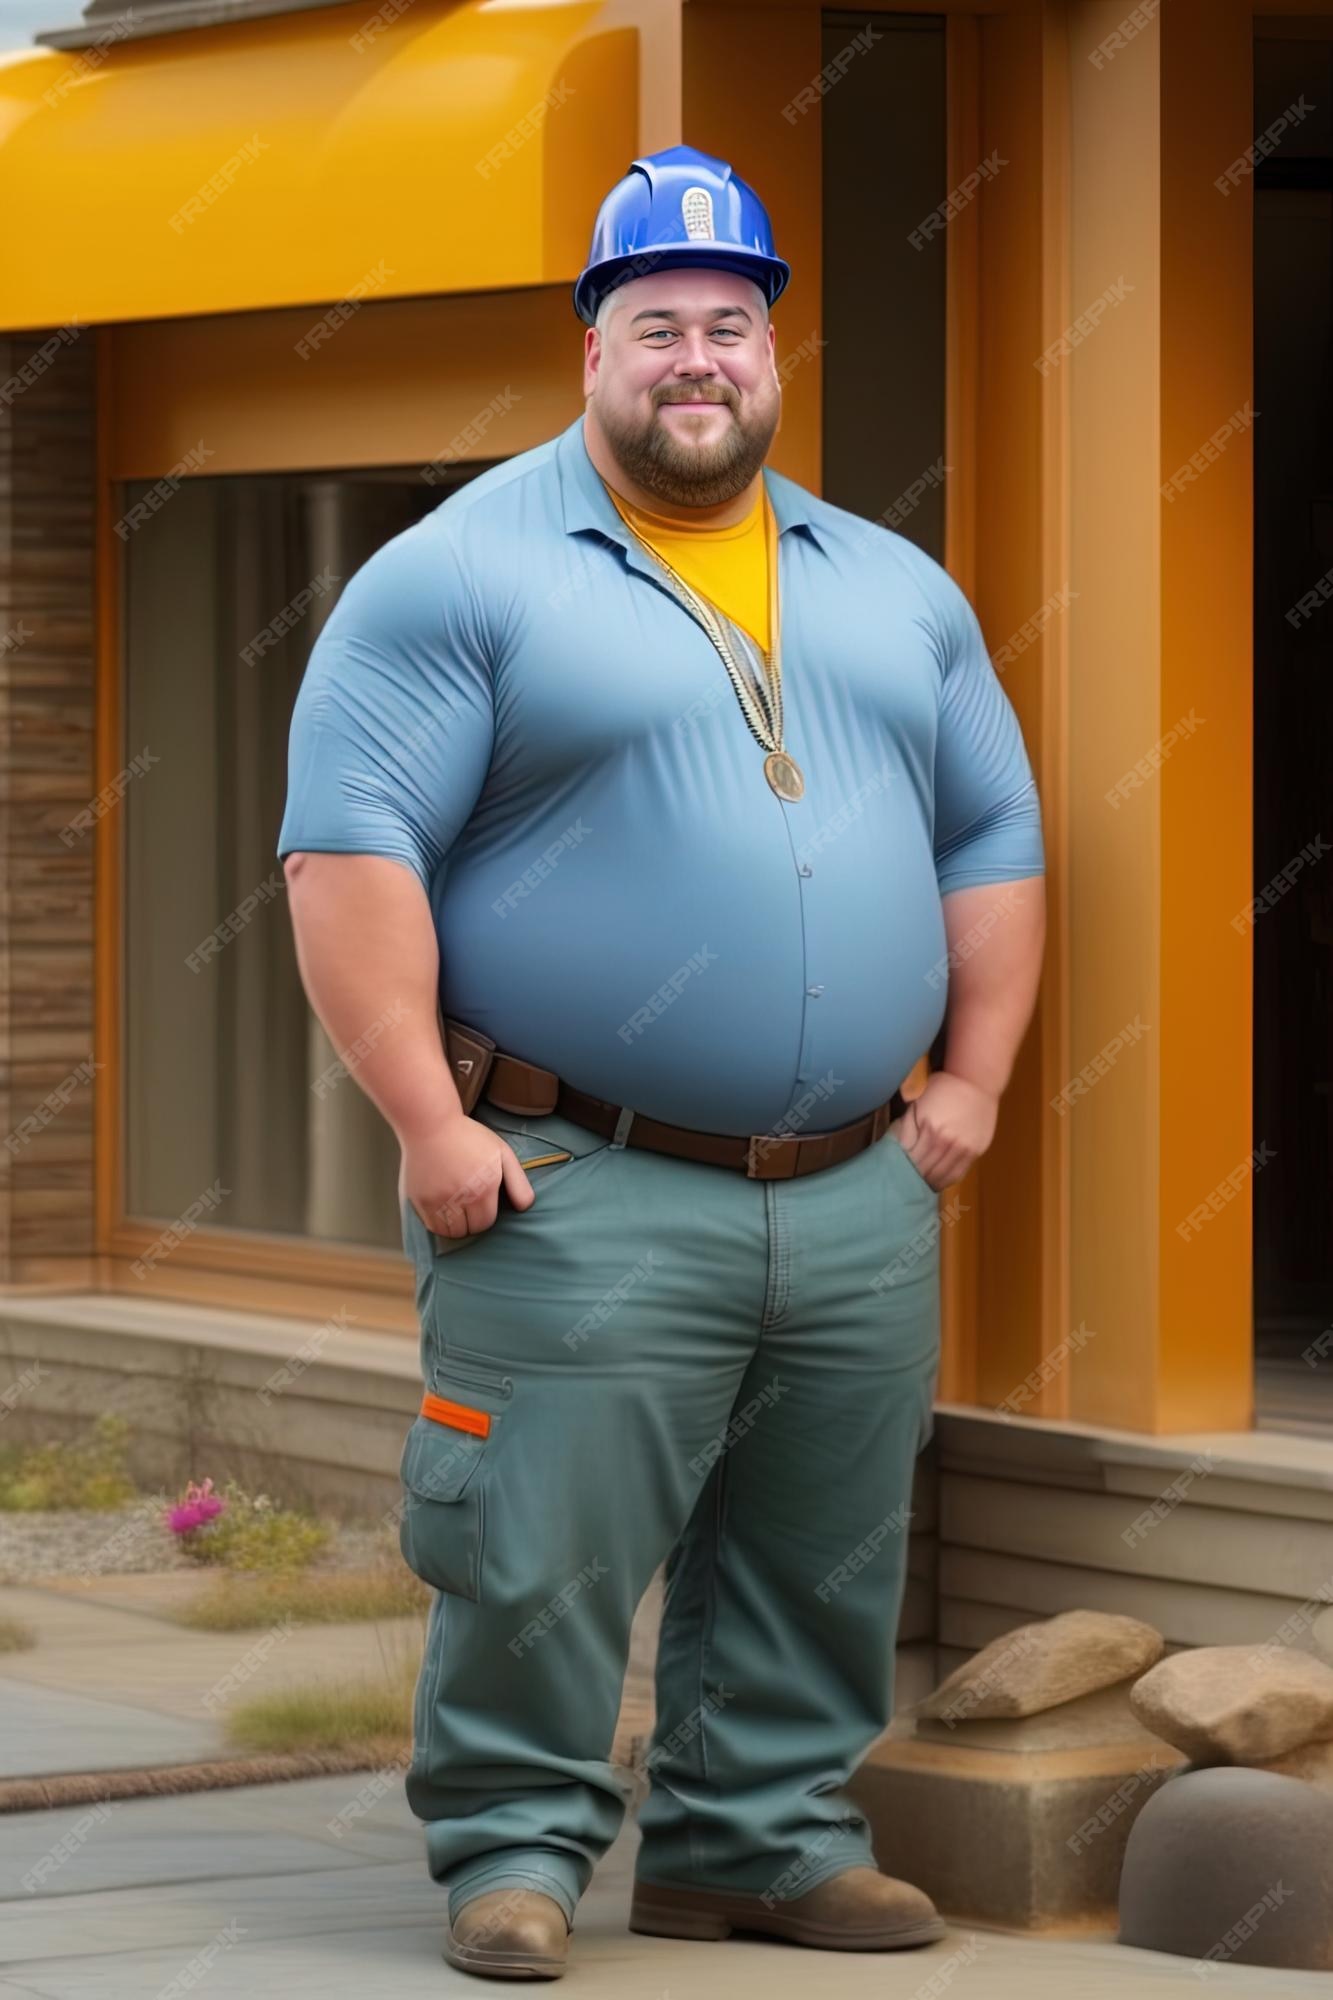 televisor Nueva Zelanda Pensionista Un hombre con una camisa azul y pantalones caqui se para frente a una casa.  | Foto Premium